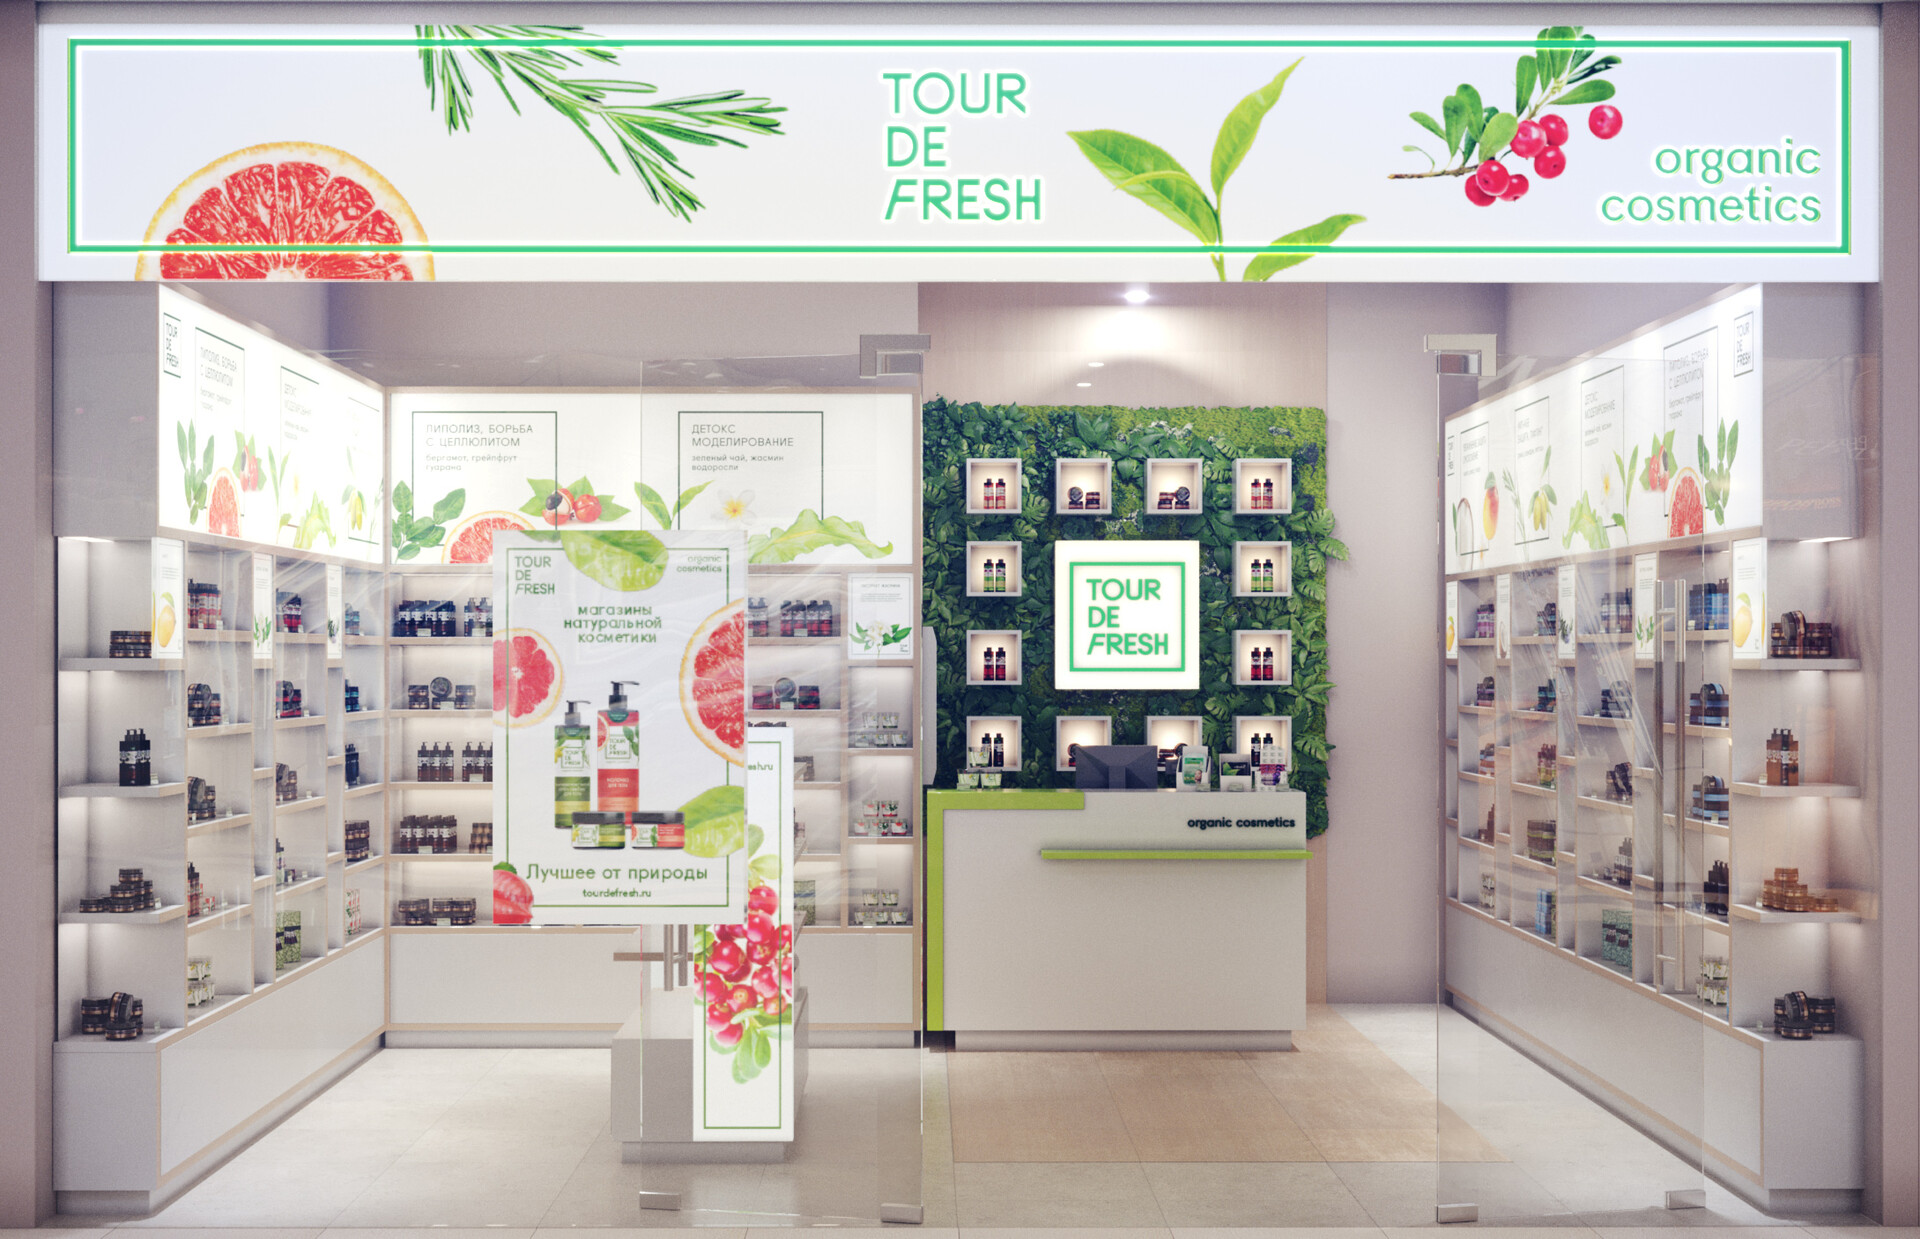 Tour de fresh. Organic cosmetics shop